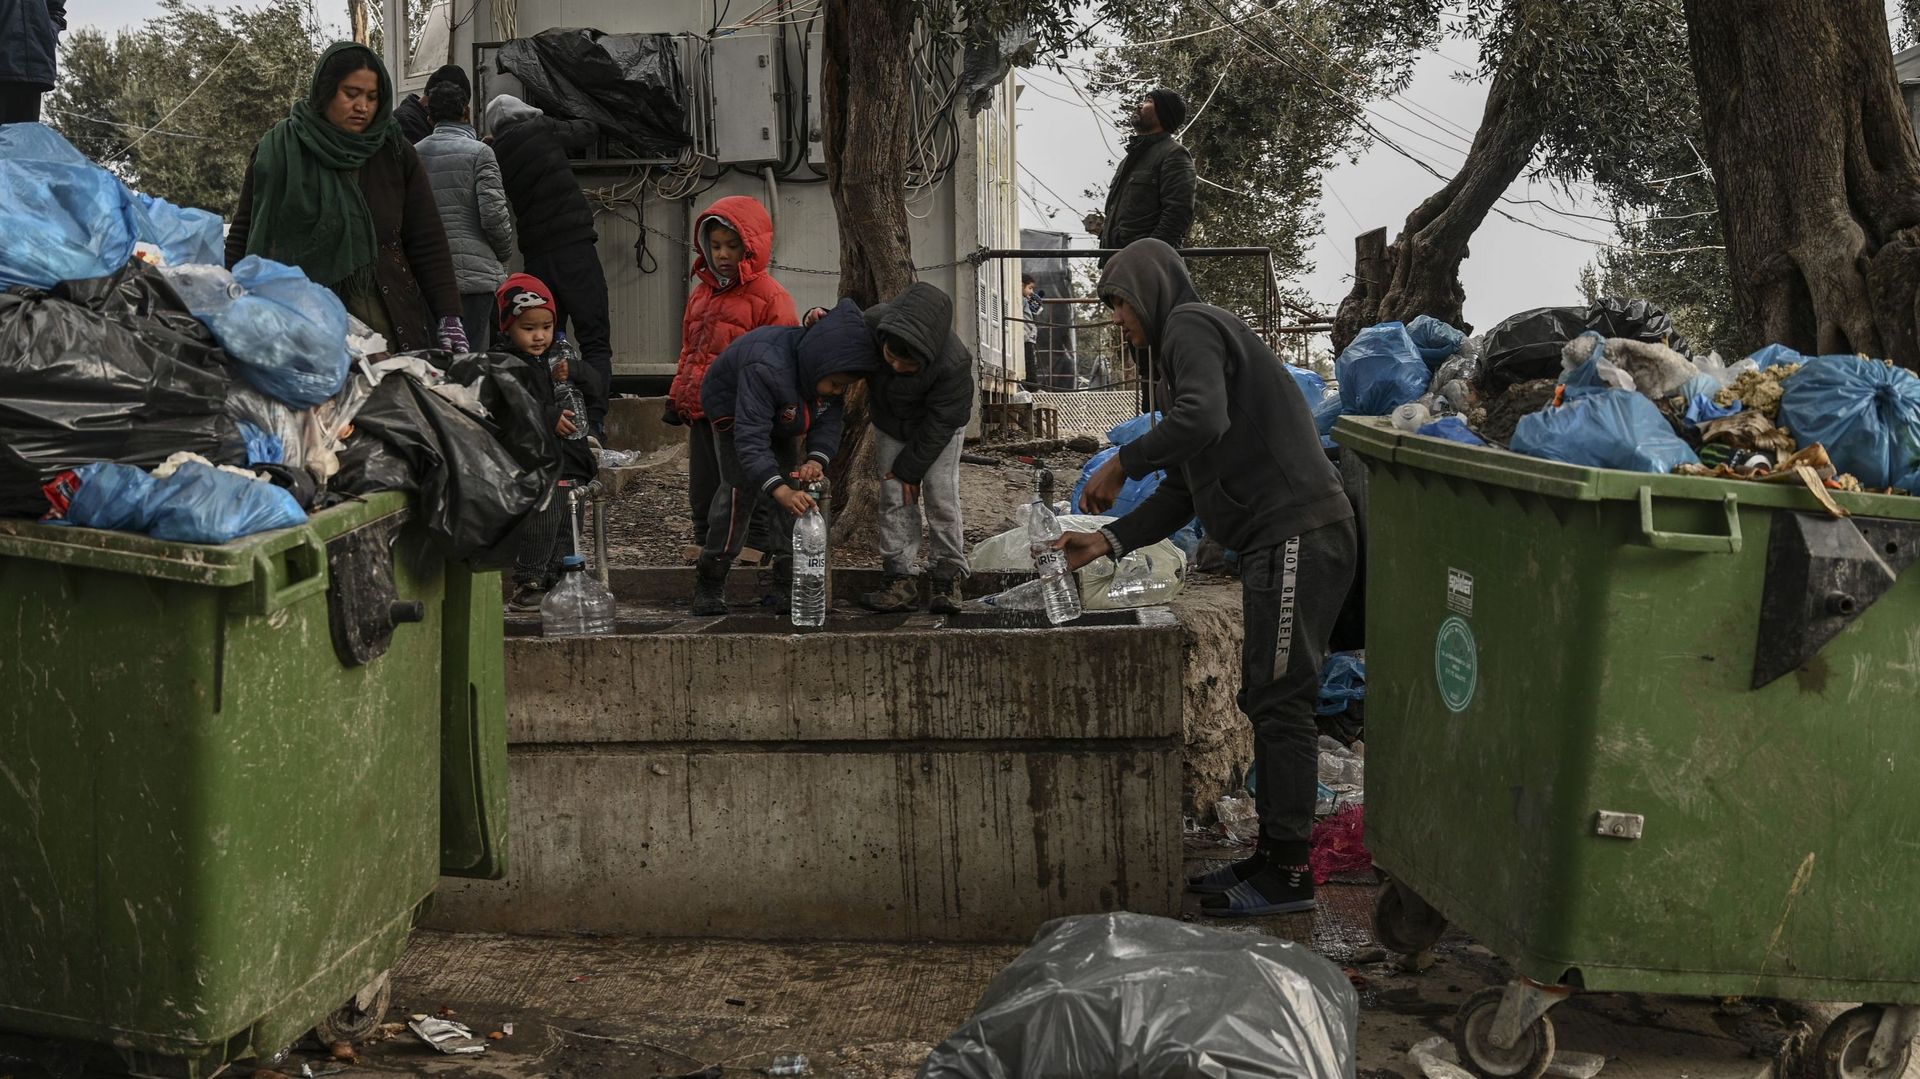 Le point d'eau près des poubelles, au camp de réfugiés de Moria, Lesbos